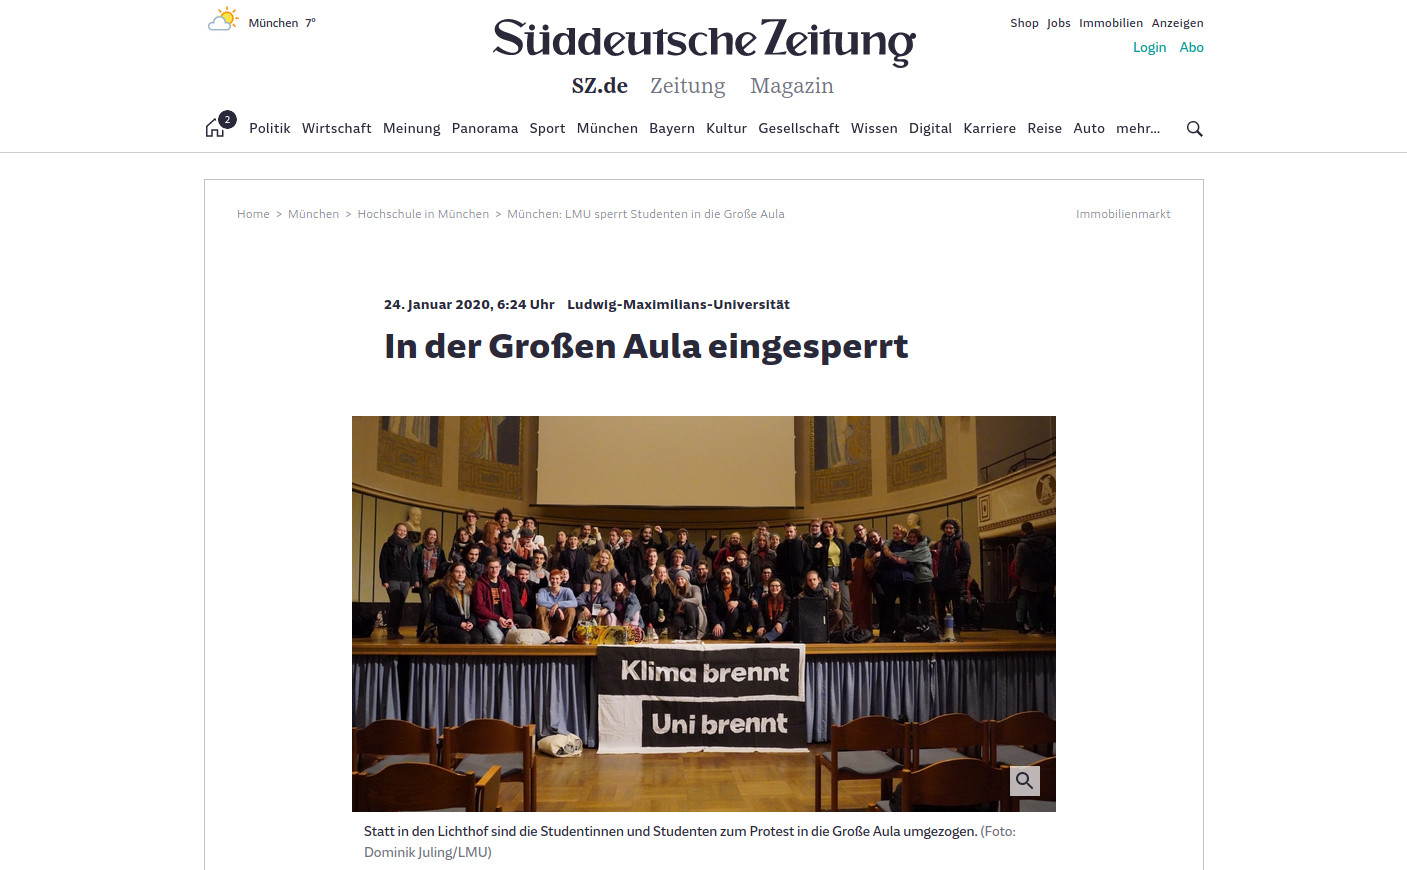 Süddeutsche Zeitung: 